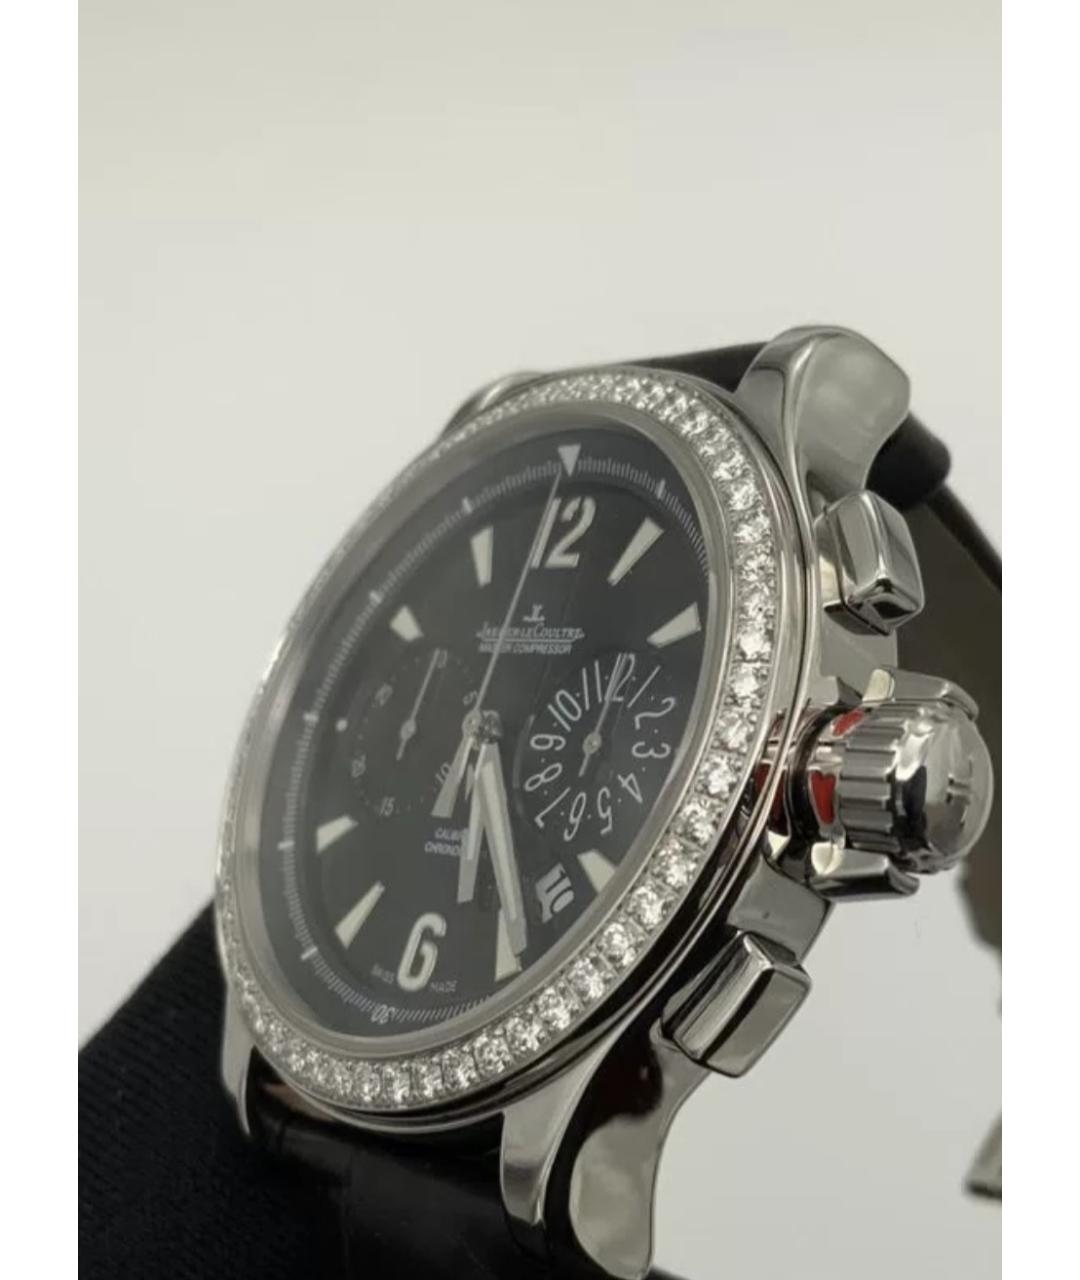 Jaeger LeCoultre Черные часы, фото 3